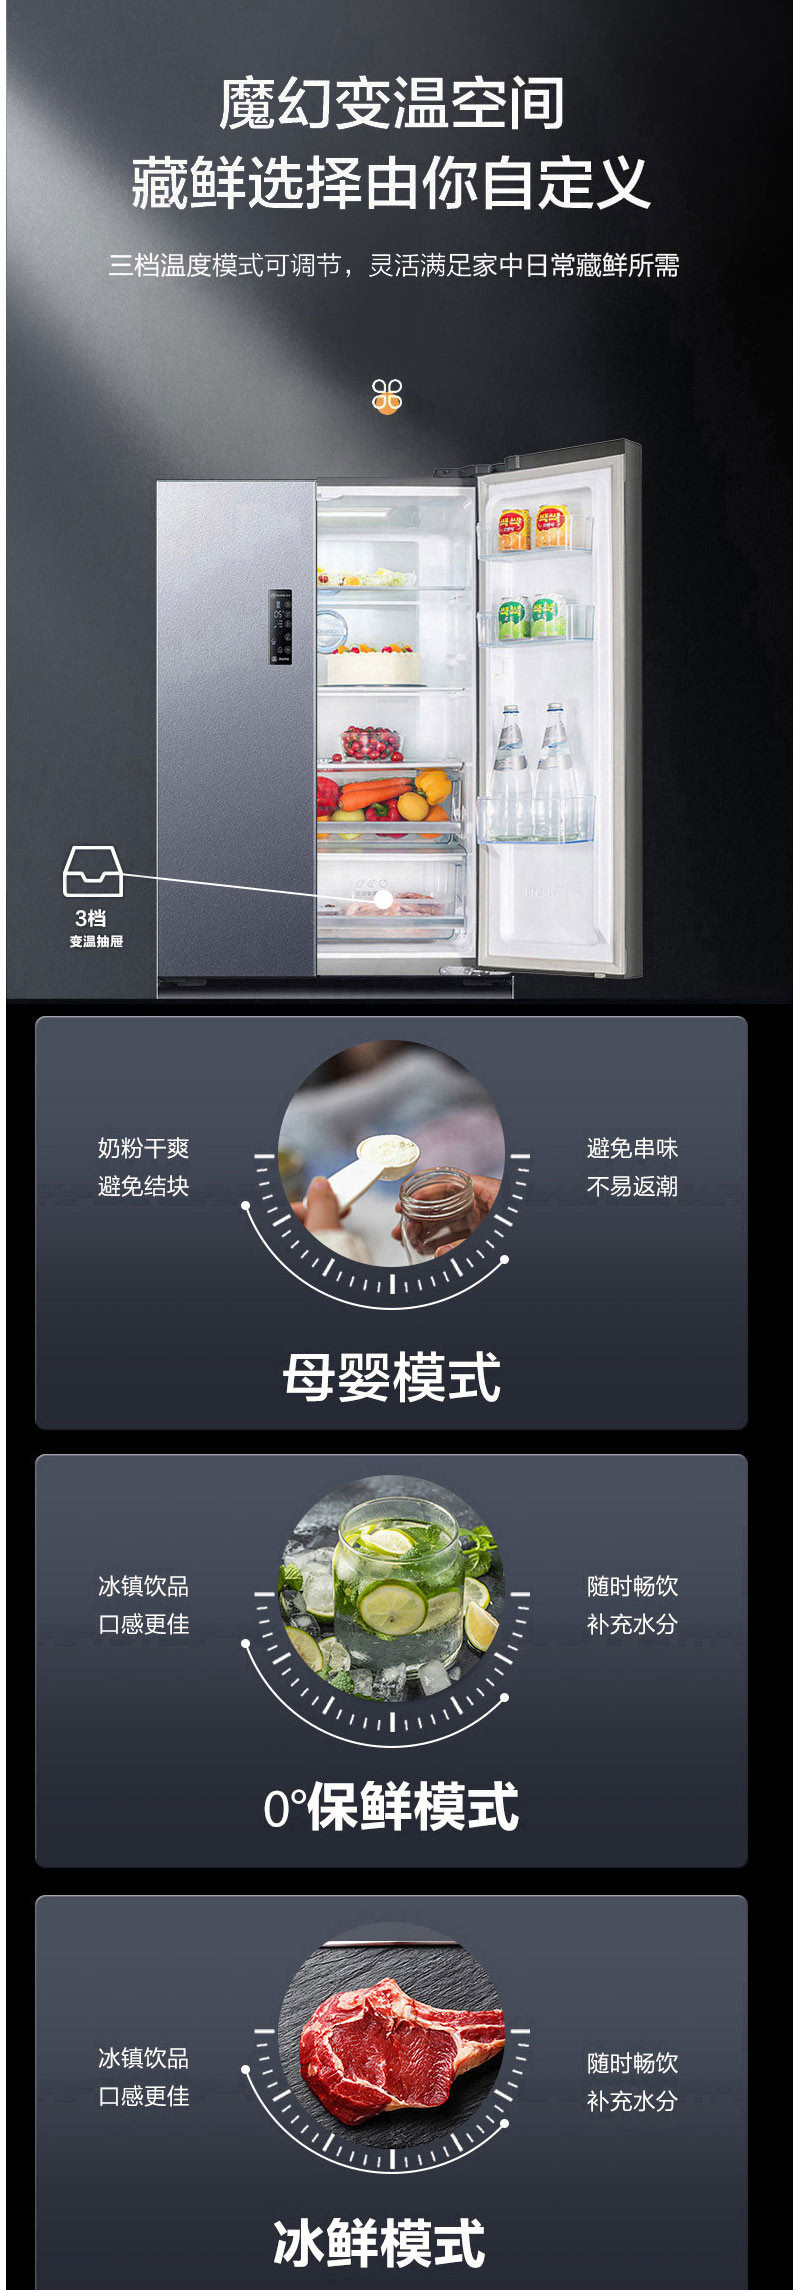 海信/Hisense BCD-452WNK1DPUJ 法式变频冰箱家用风冷无霜四门冰箱